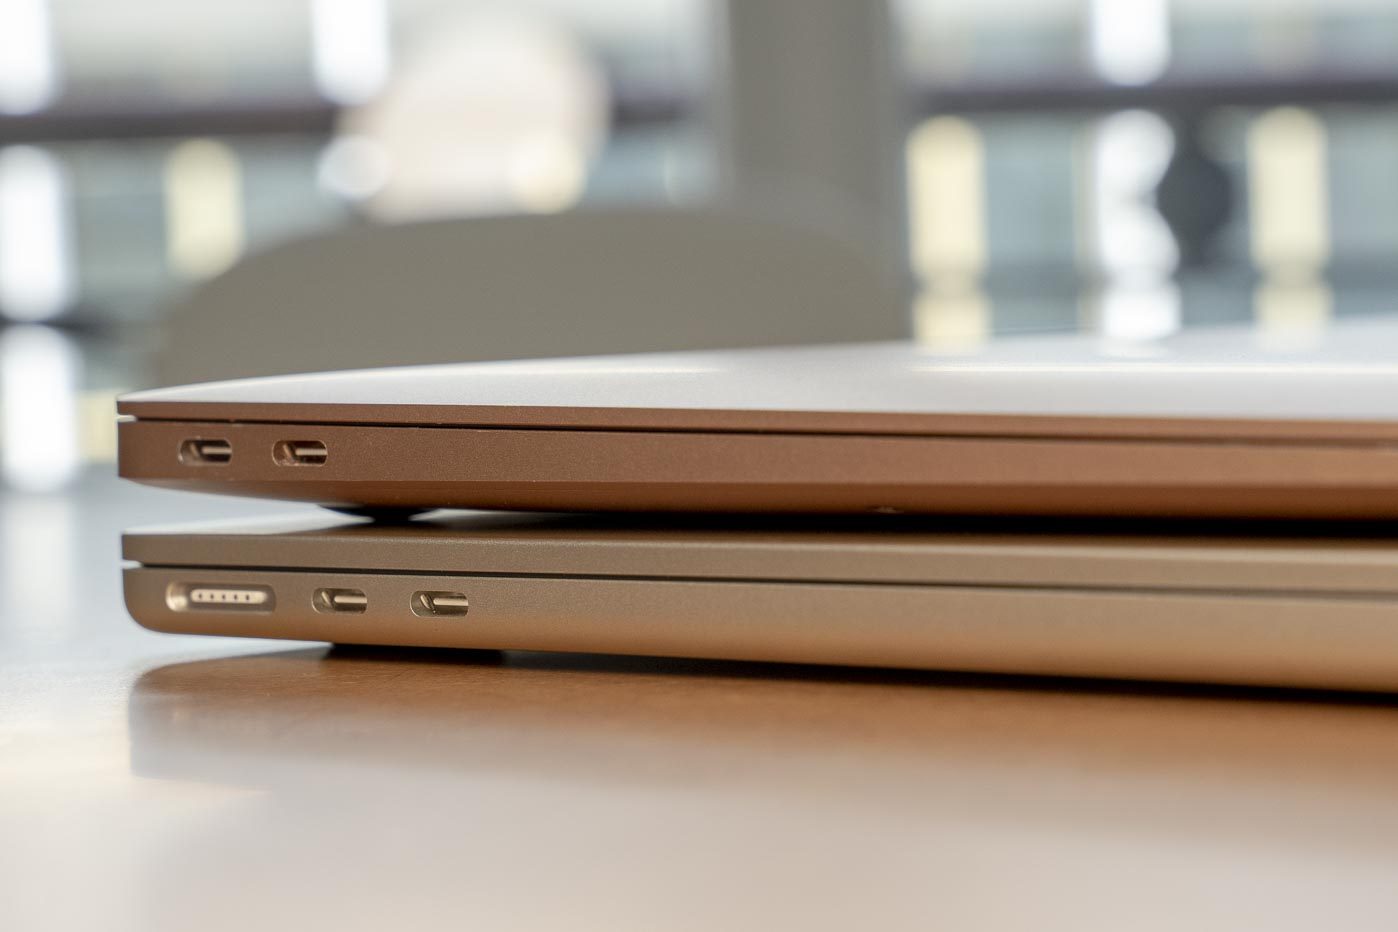 Le MacBook Air gagne un connecteur MagSafe pour se recharger, libérant ainsi un des deux ports Thunderbolt/USB 4.